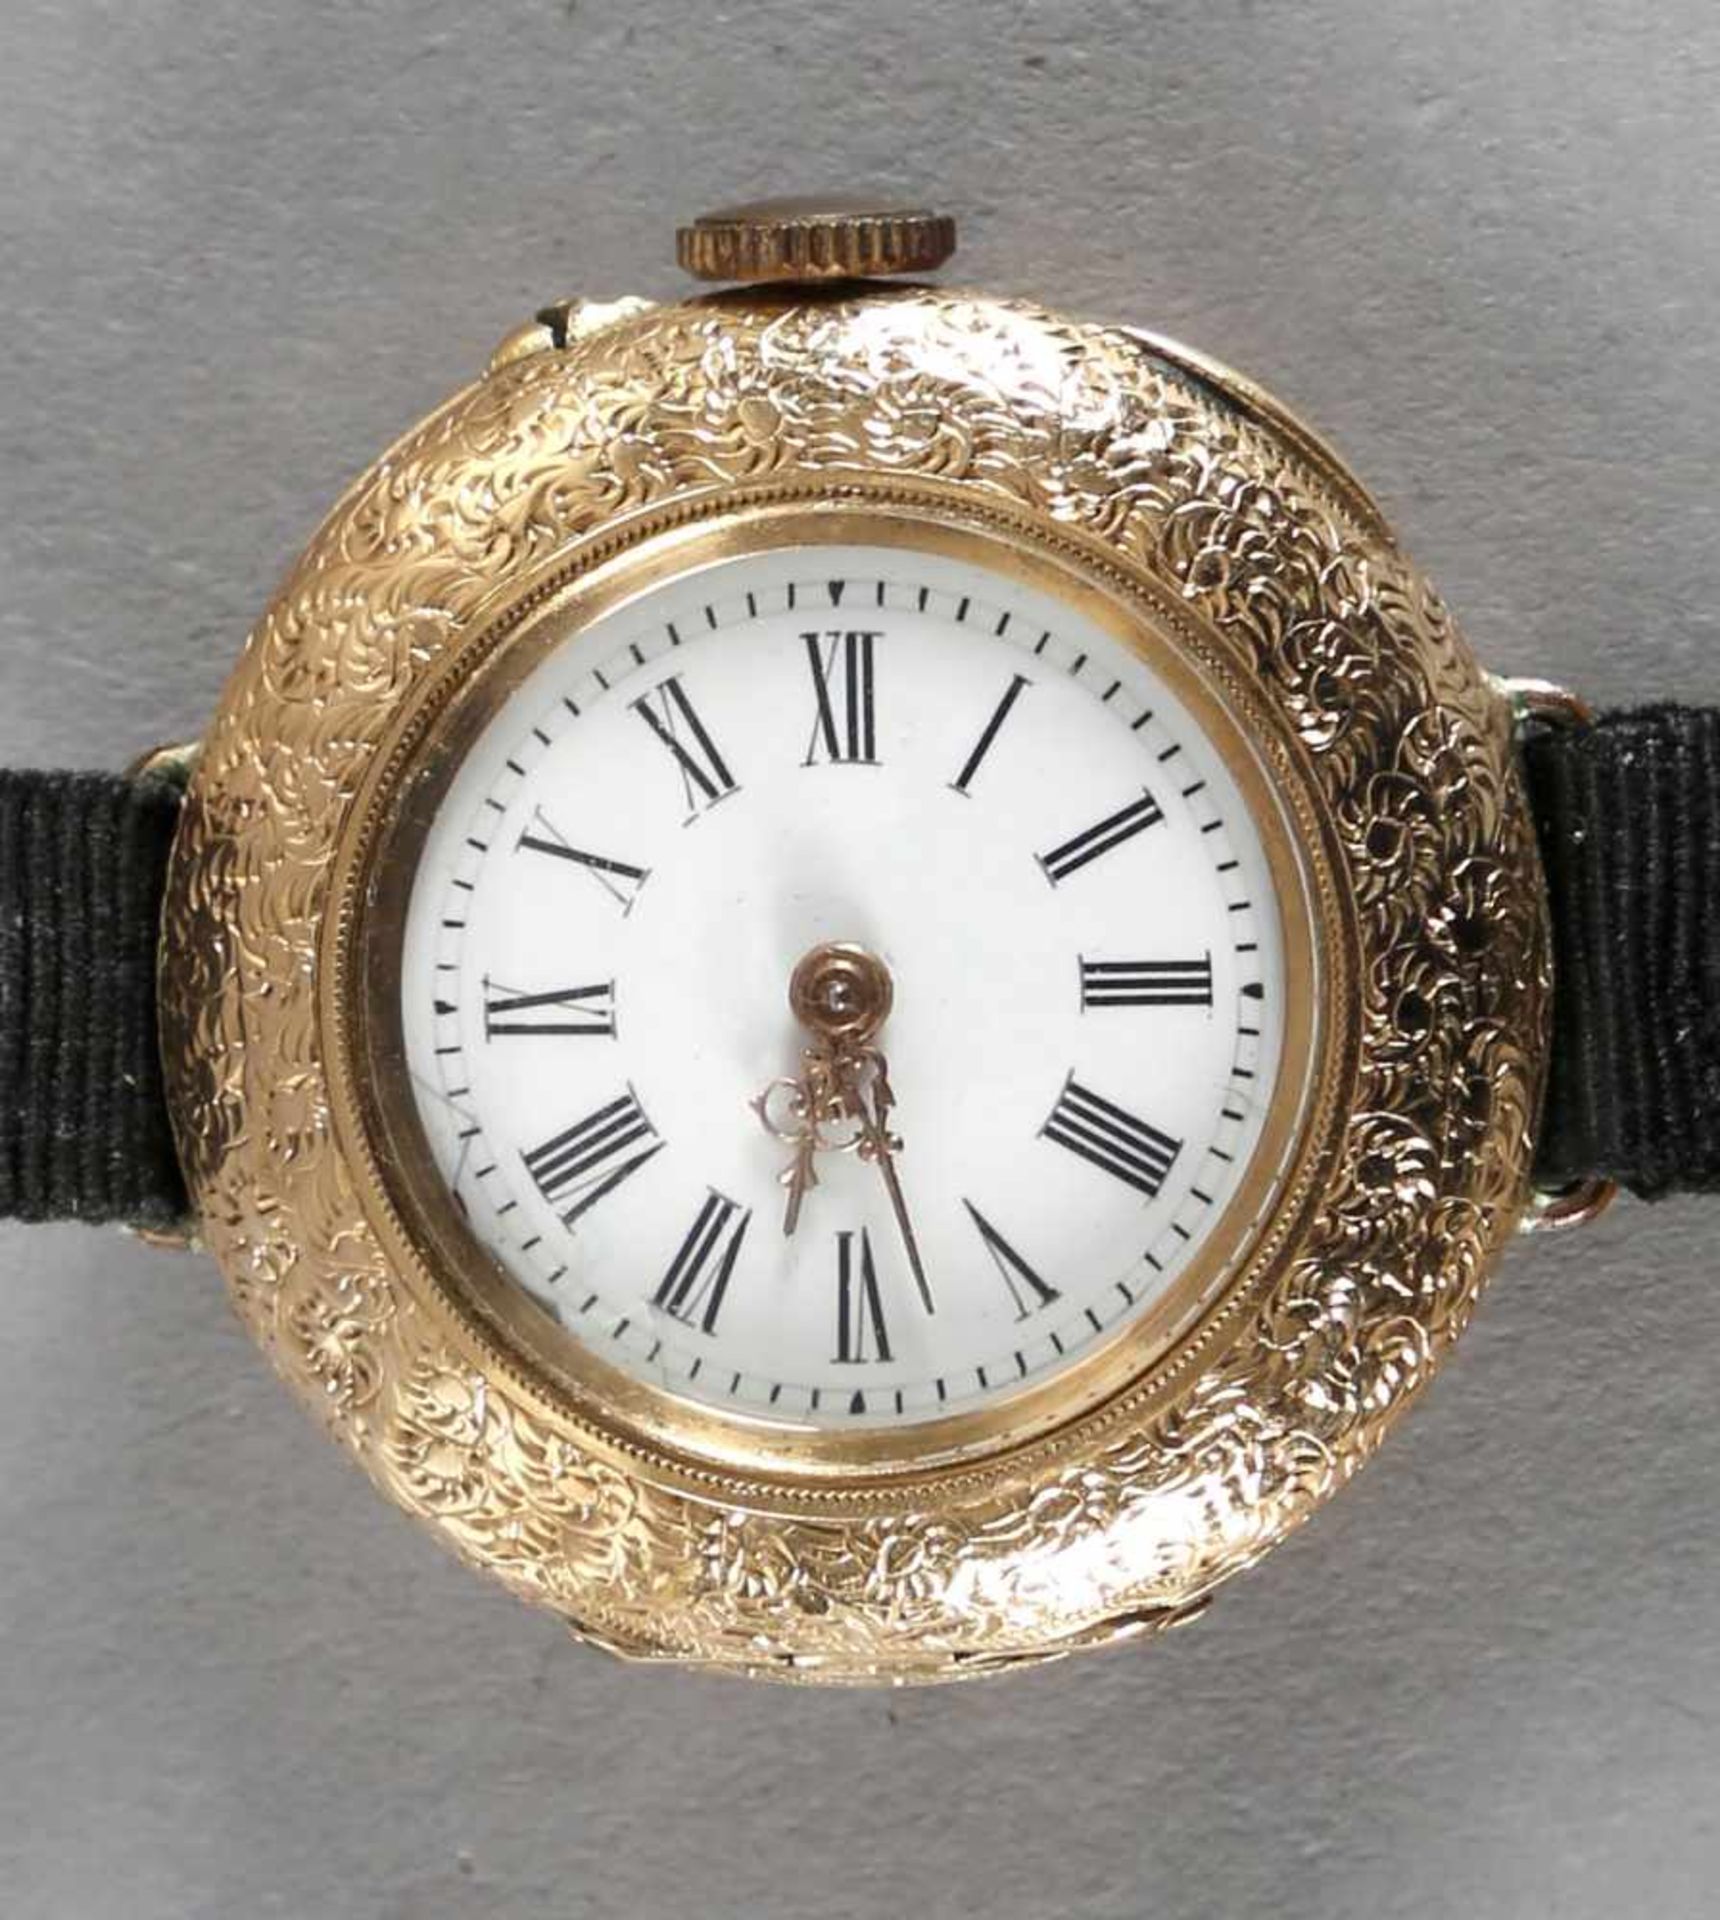 Damenhalsuhr als Armbanduhr, um 1900585er Gold, Innendeckel Metall, wohl deutsch, Kronenaufzug mit